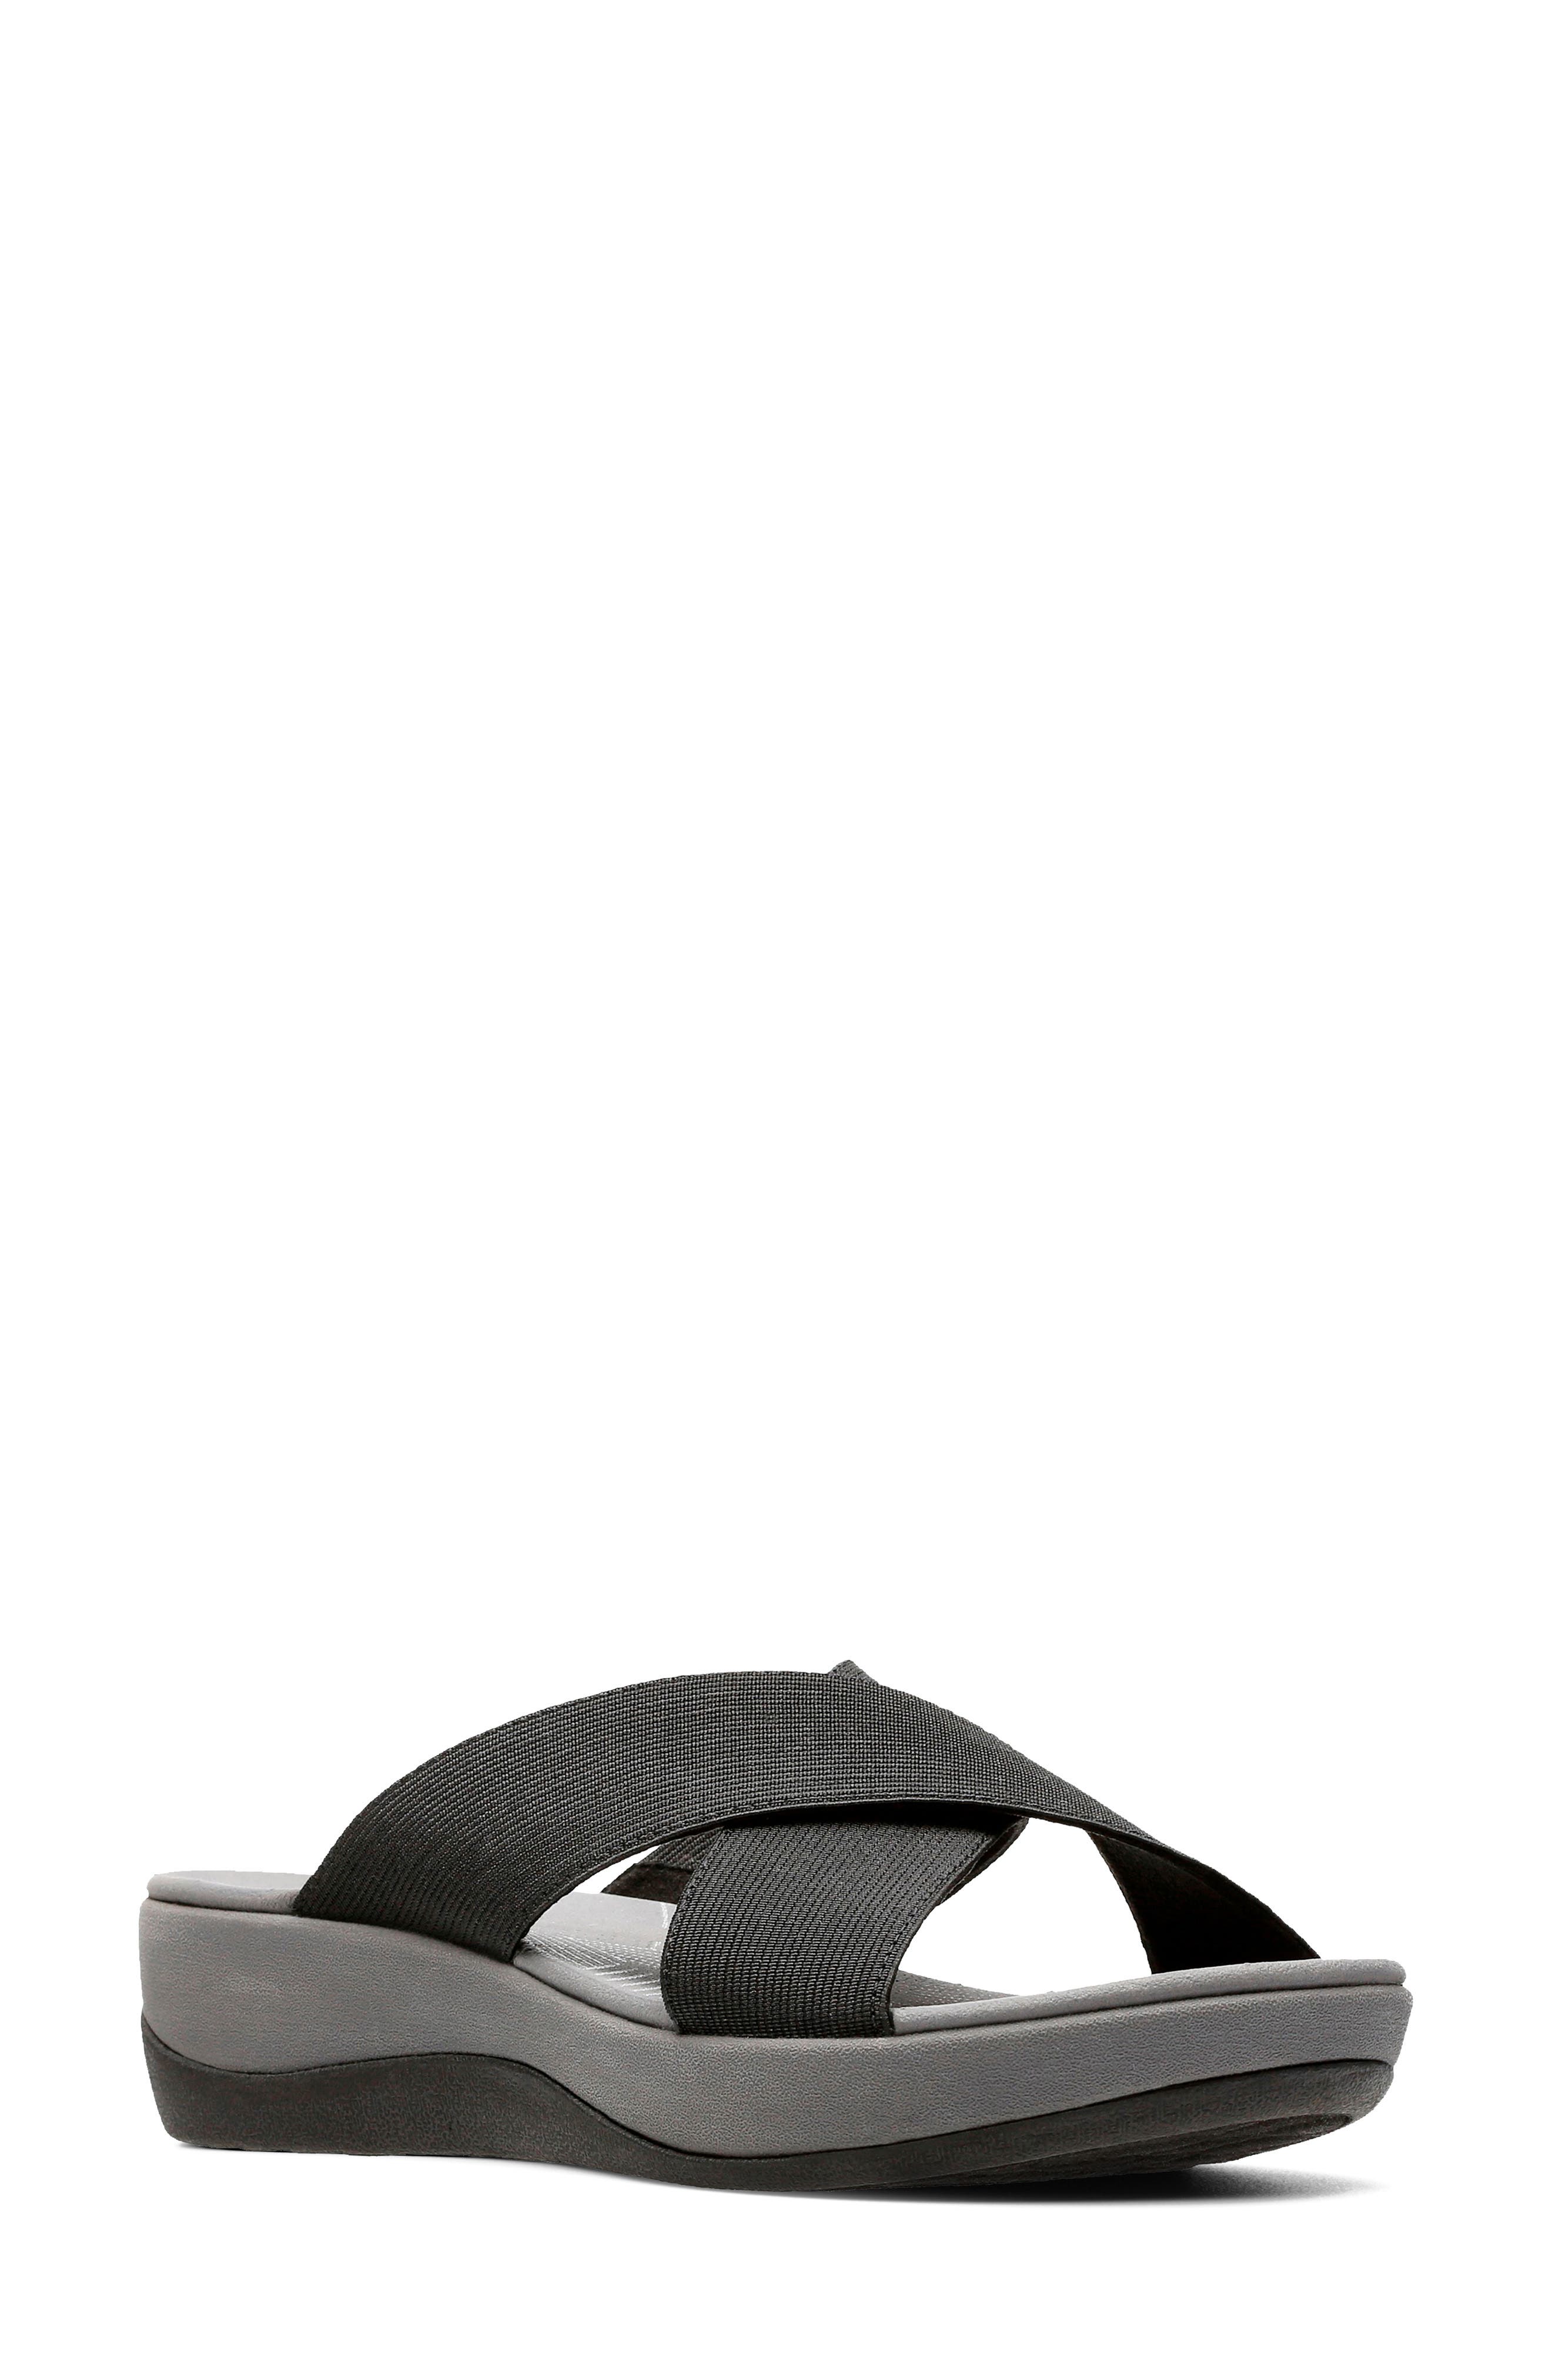 Clarks® Sandals and Flip-Flops | Nordstrom